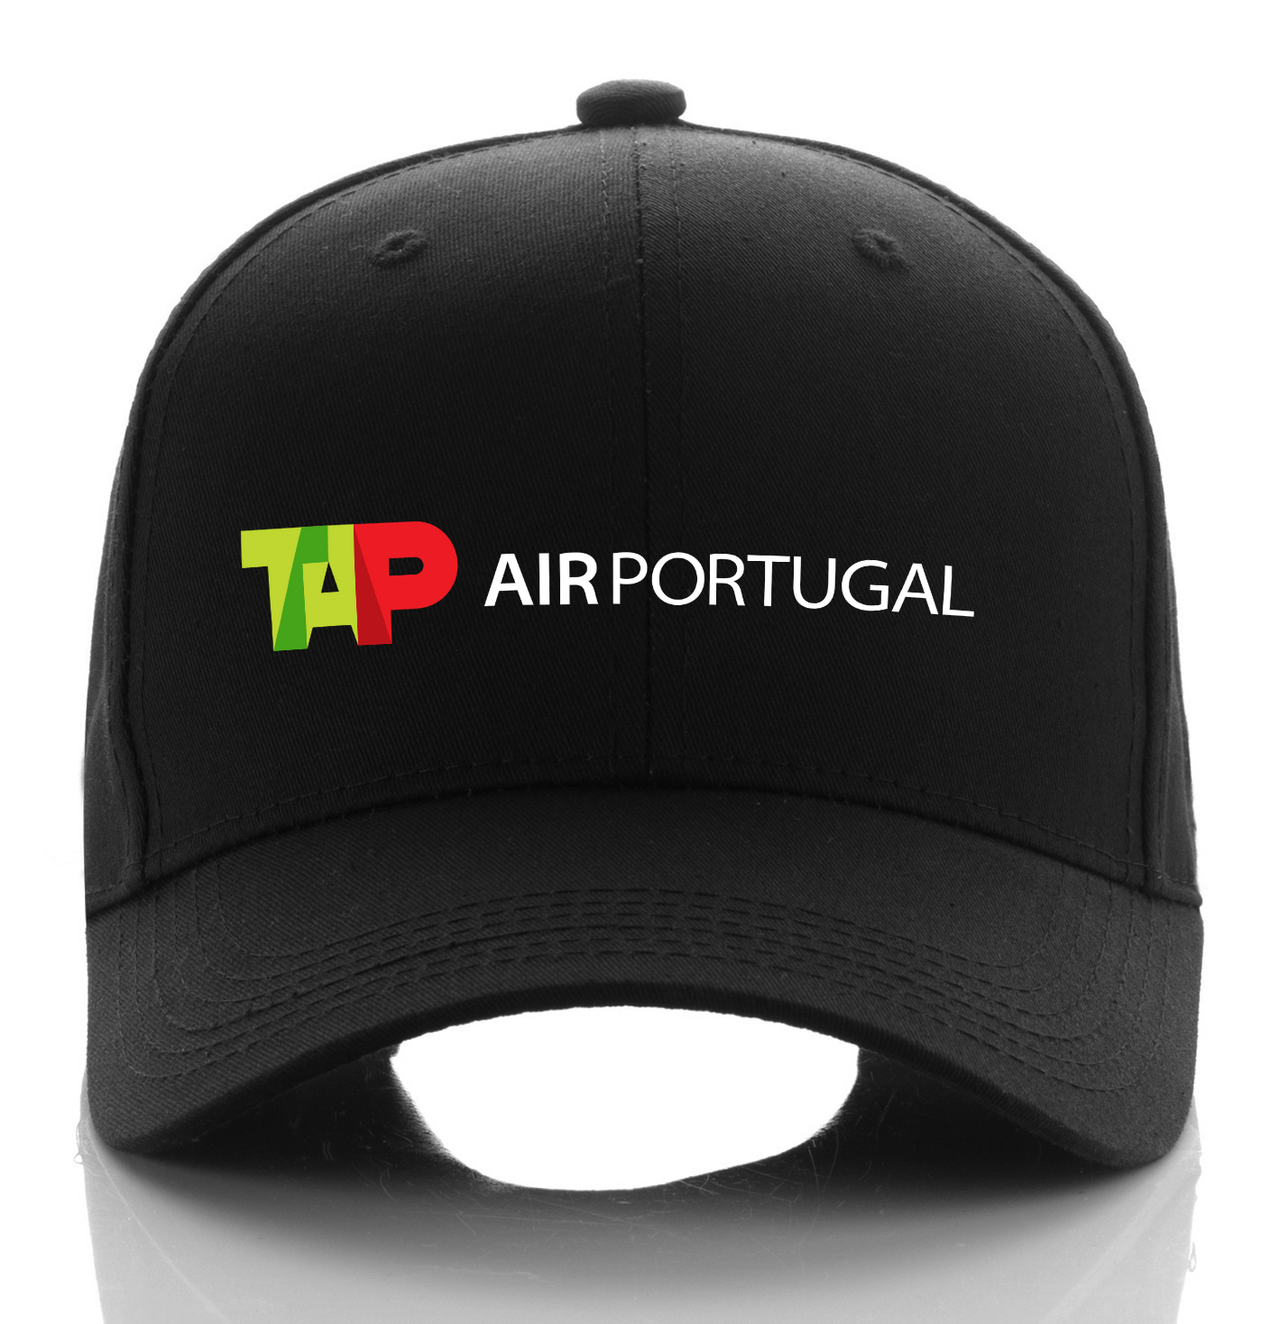 PORTUGAL AIRLINE DESIGNED CAP